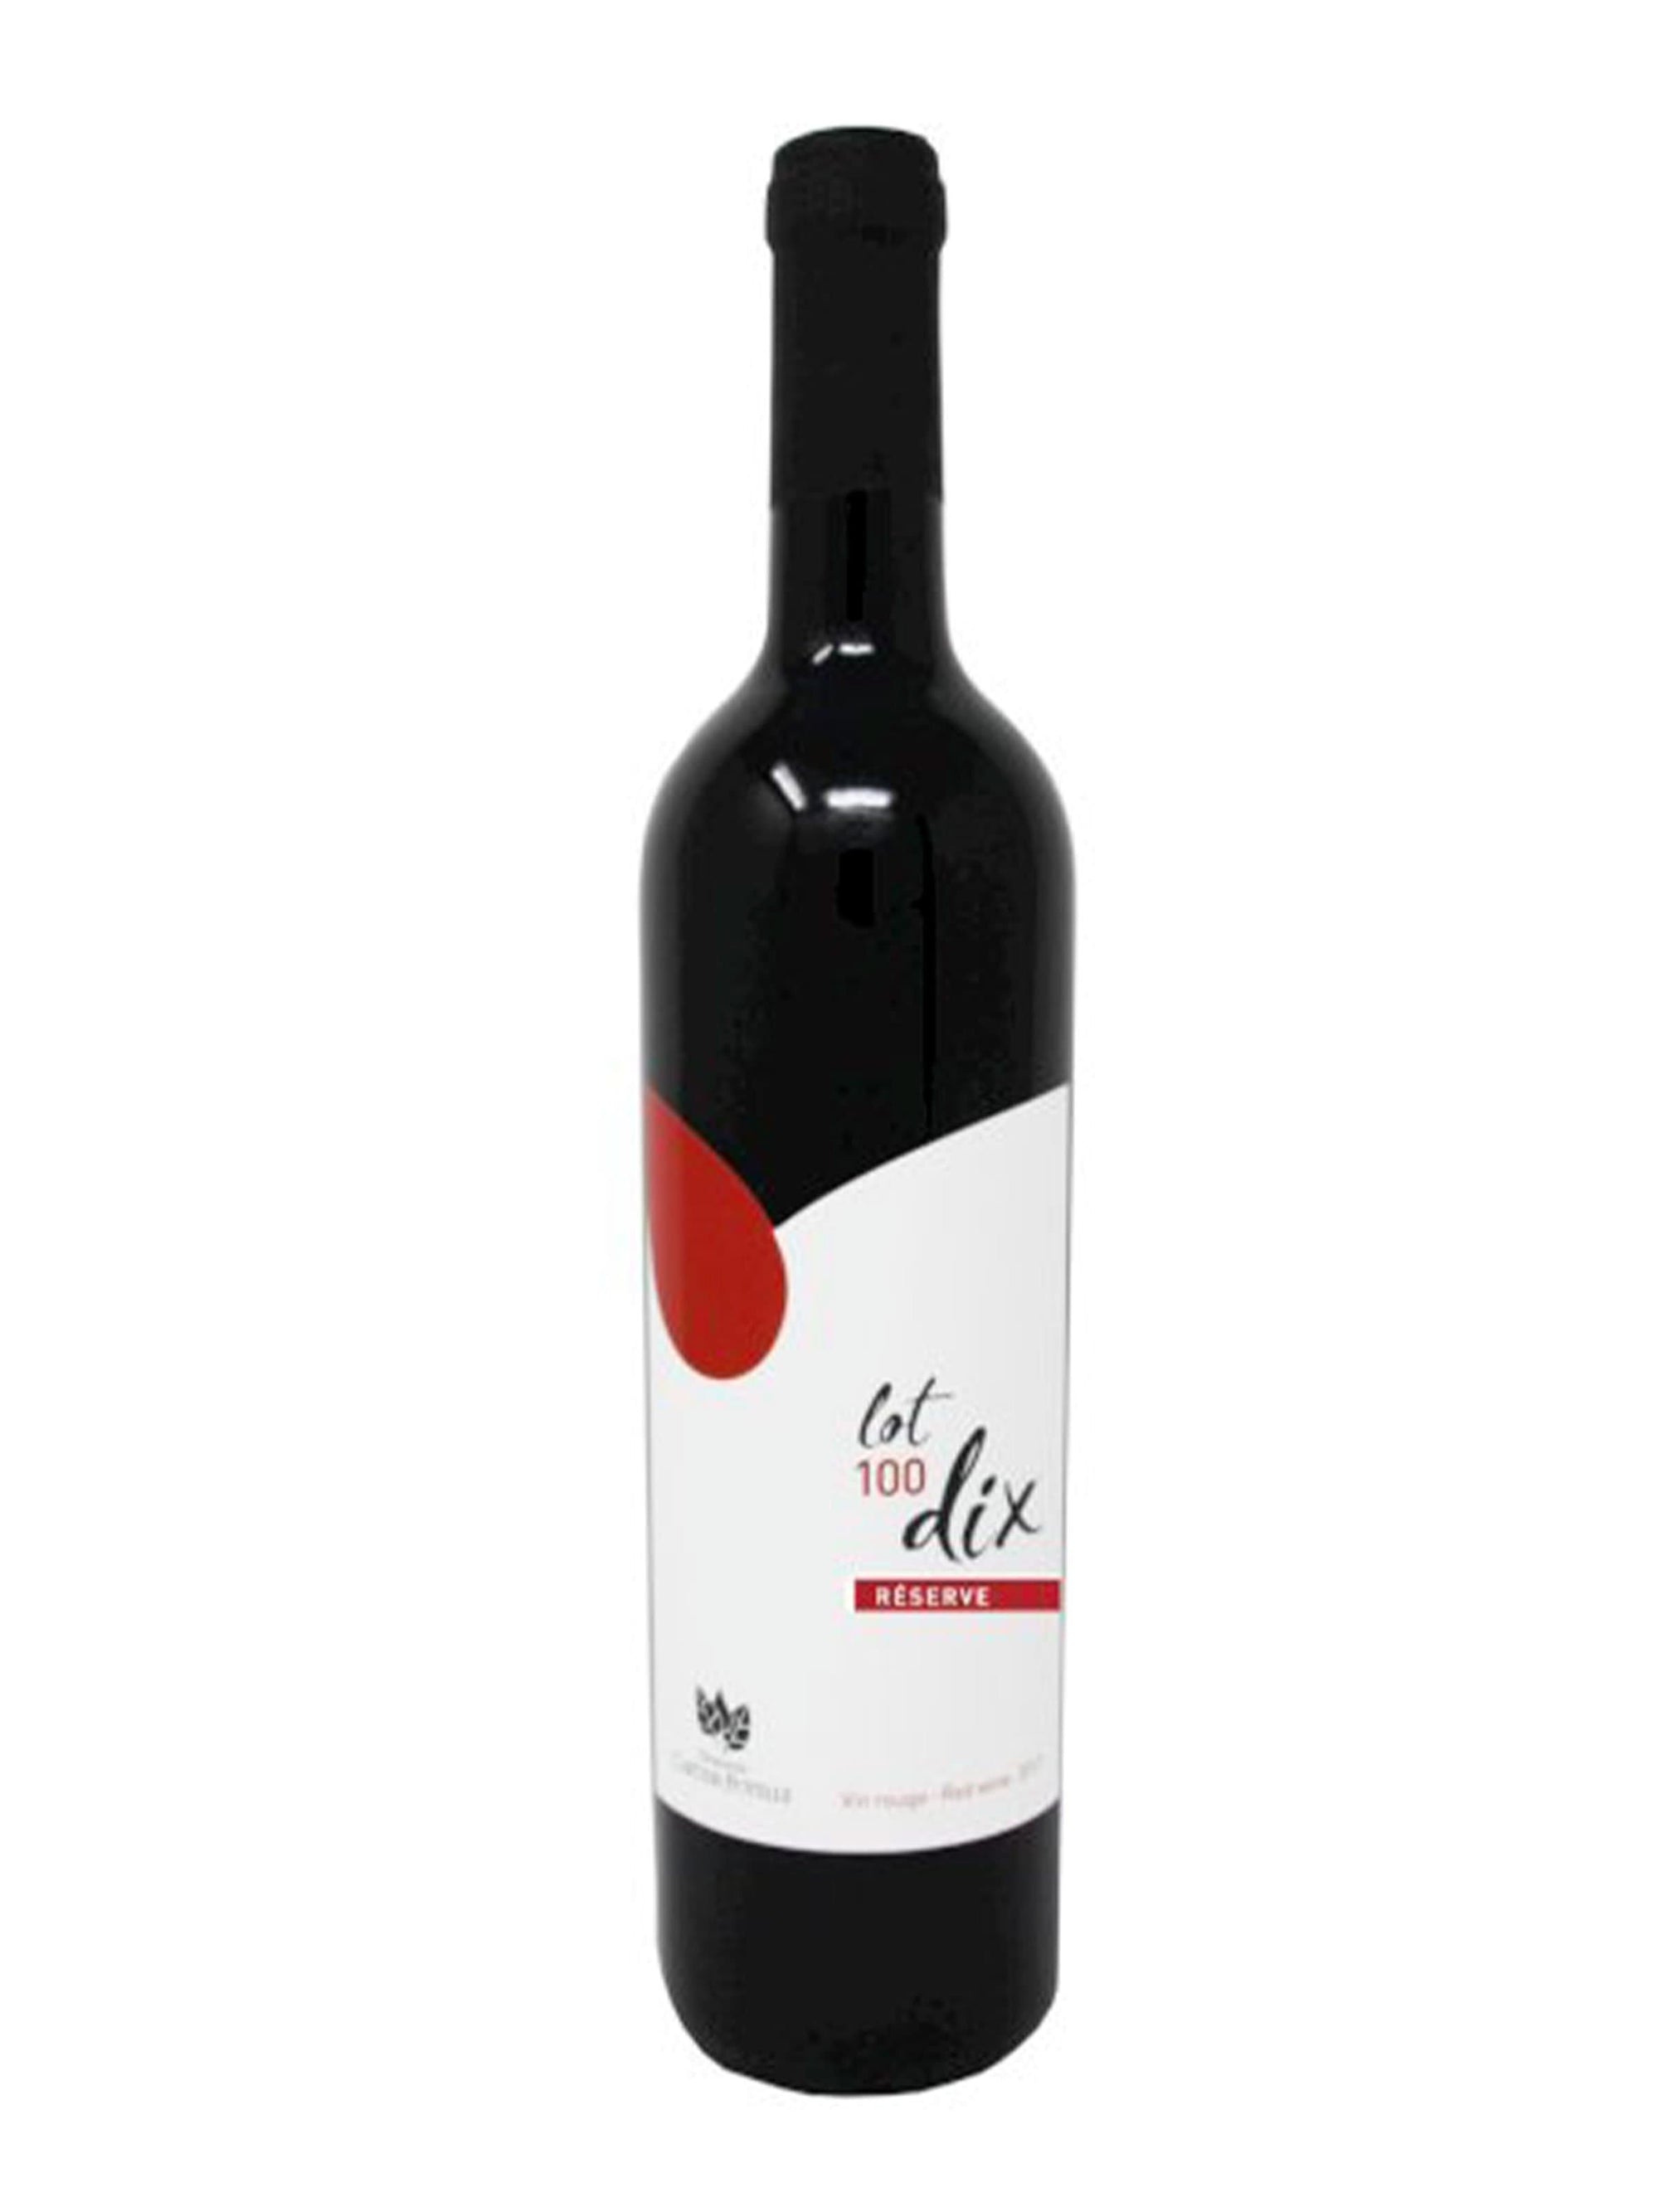 Lot 100 dix Réserve 2021 - Vin rouge du Domaine Cartier-Potelle